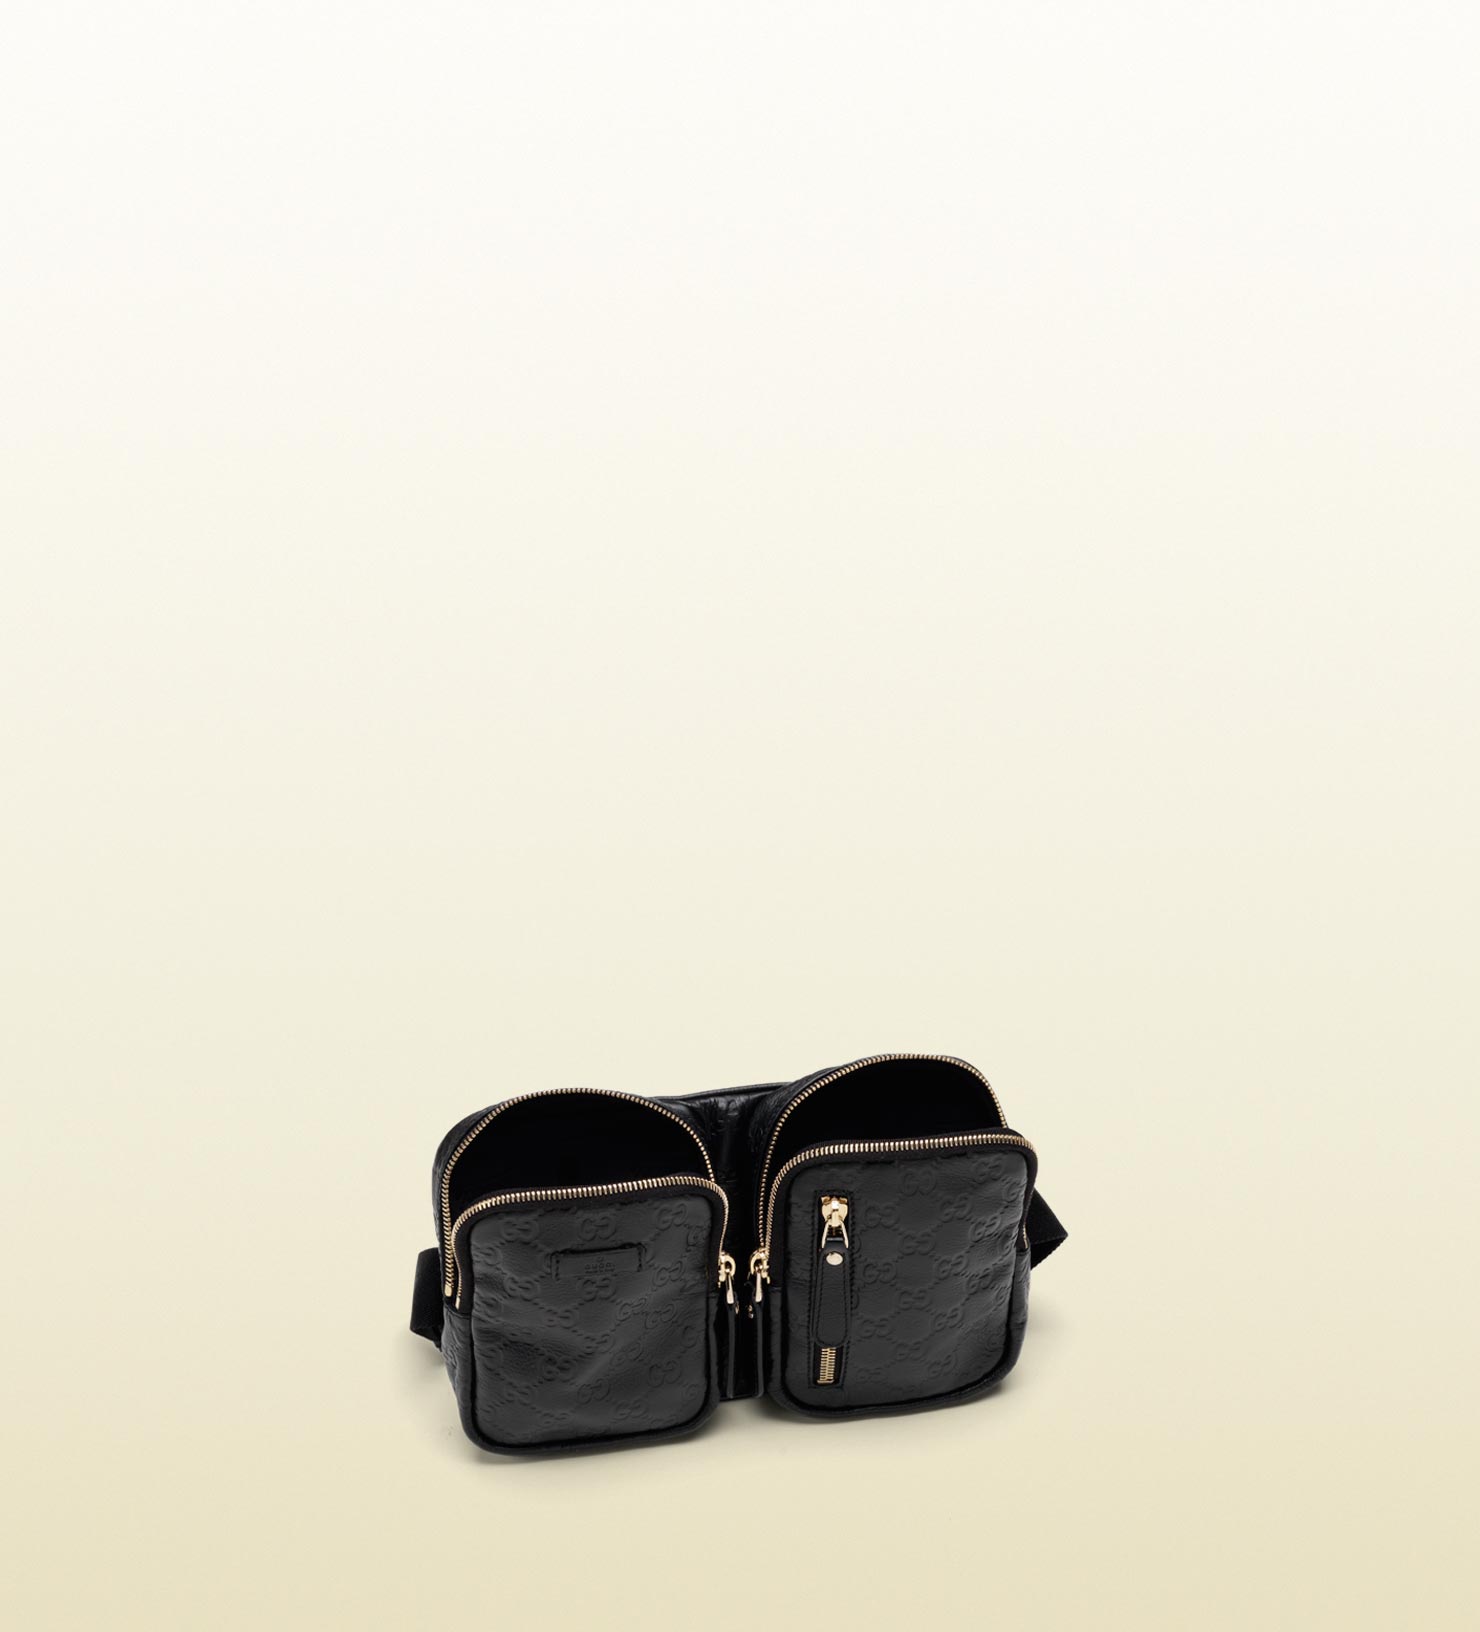 Lyst - Gucci Belt Bag in Black for Men